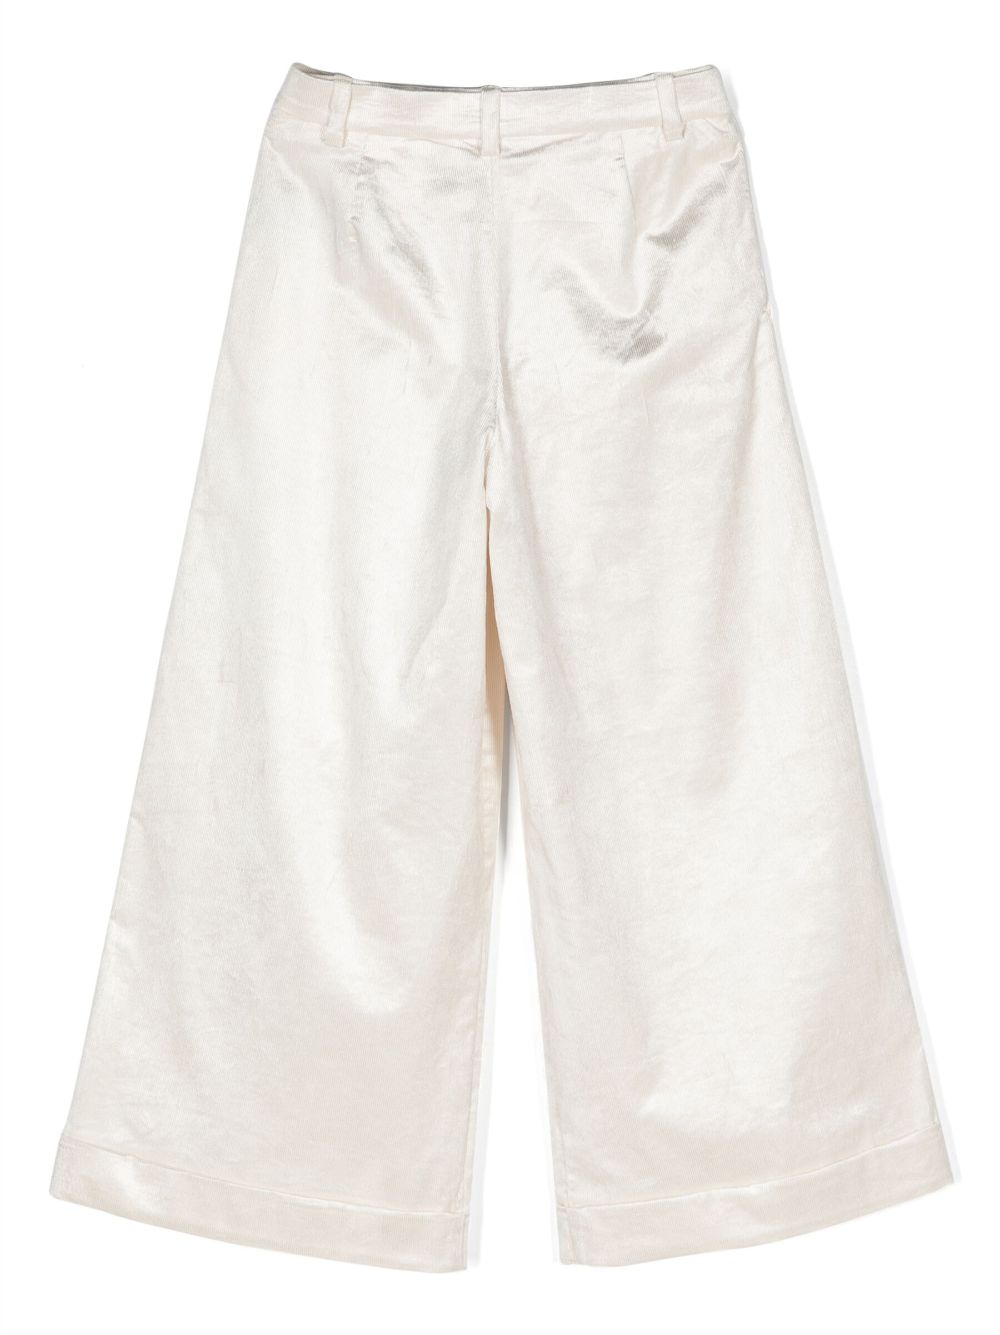 Pantalon côtelé blanc pour fille